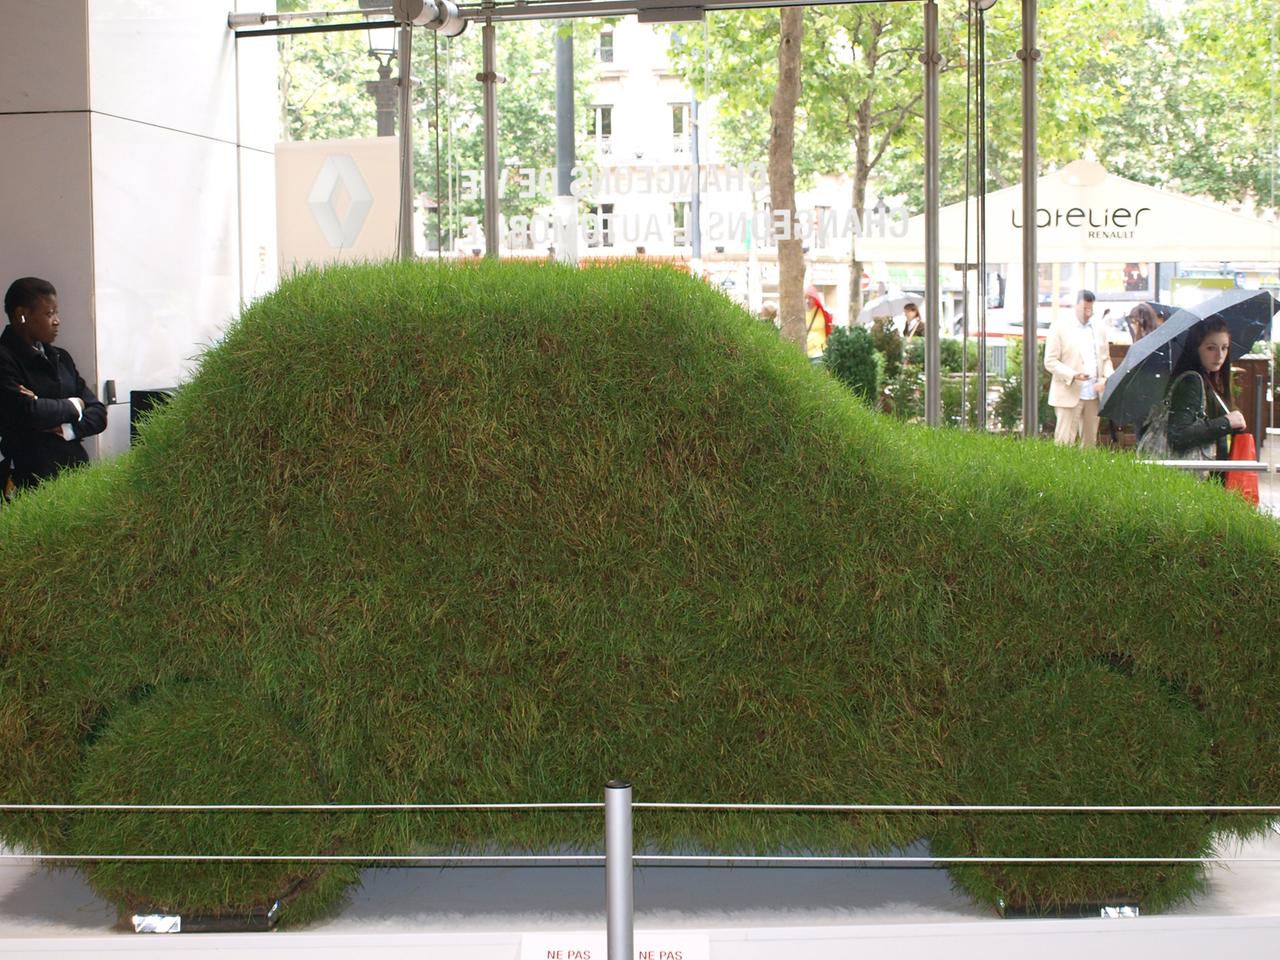 In einem Autosalon ist ein mit Gras bedecktes Auto zu sehen.